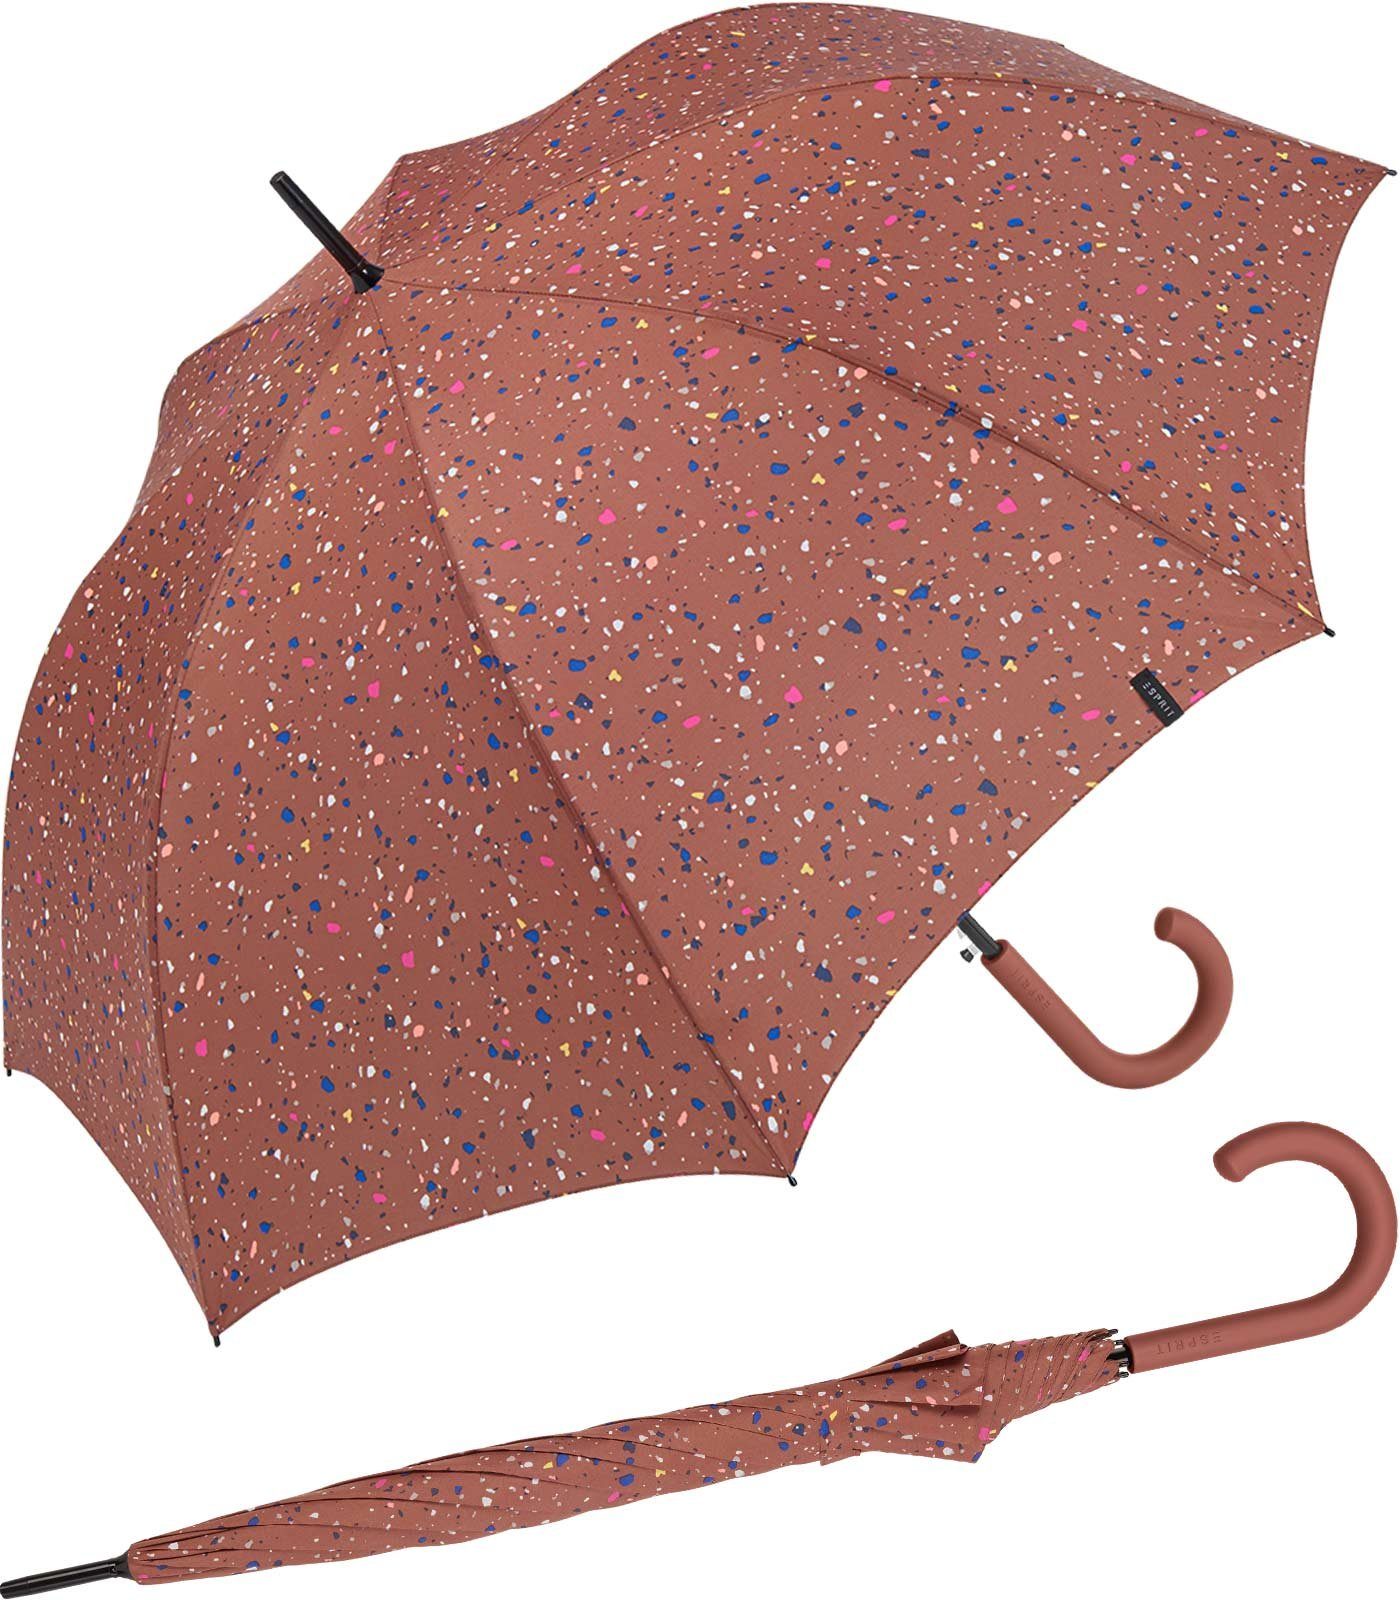 Esprit Langregenschirm Damen Auf-Automatik - Terrazzo Dots - terra, groß, stabil, mit verspieltem Sternenmuster